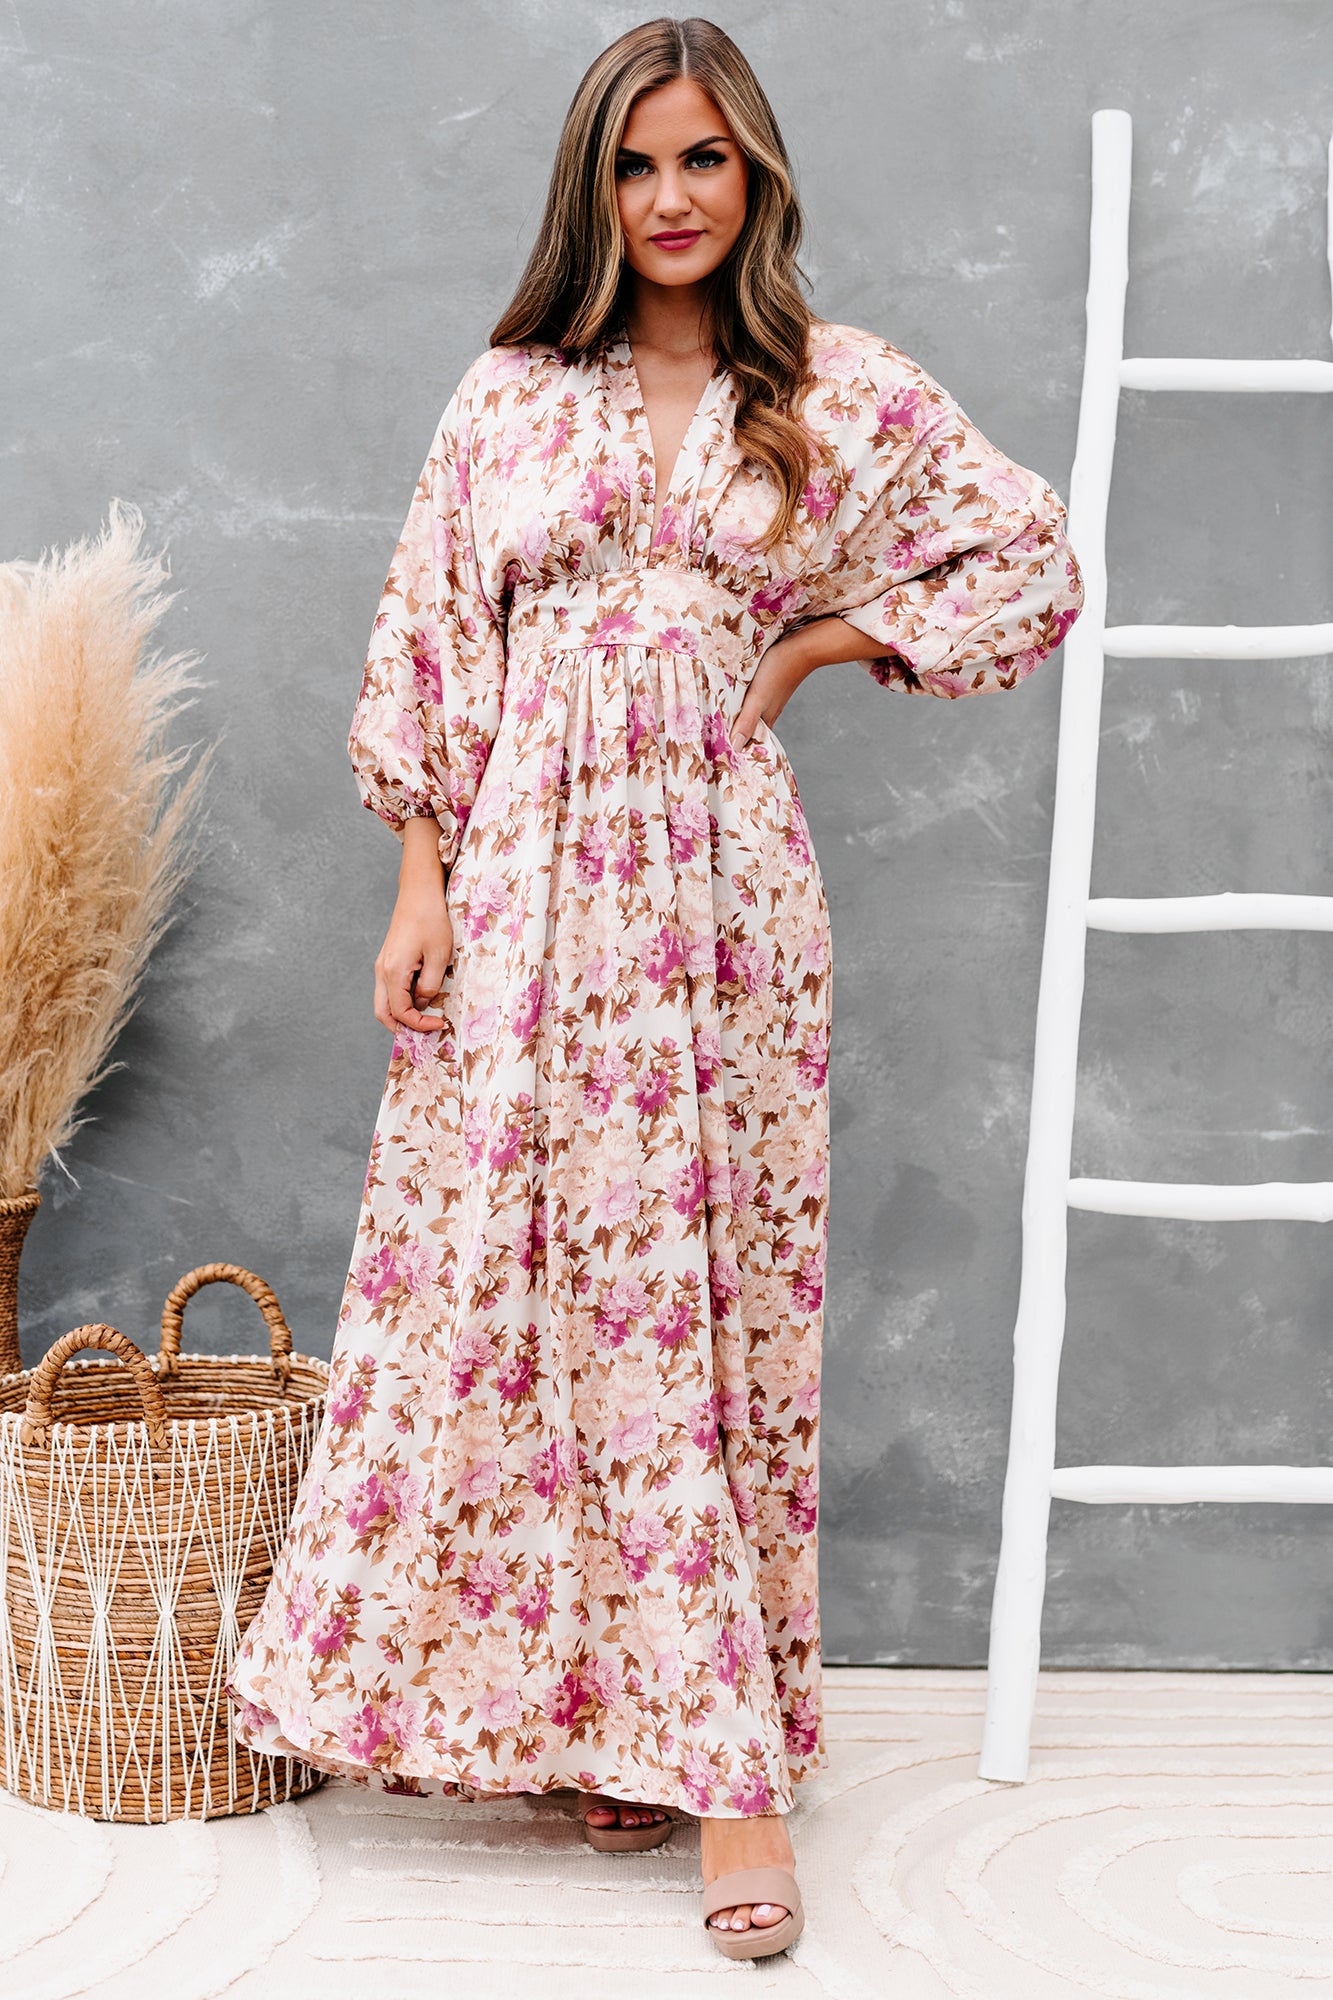 Serene Queen Satin Floral Maxi Dress (Beige/Mauve) - NanaMacs